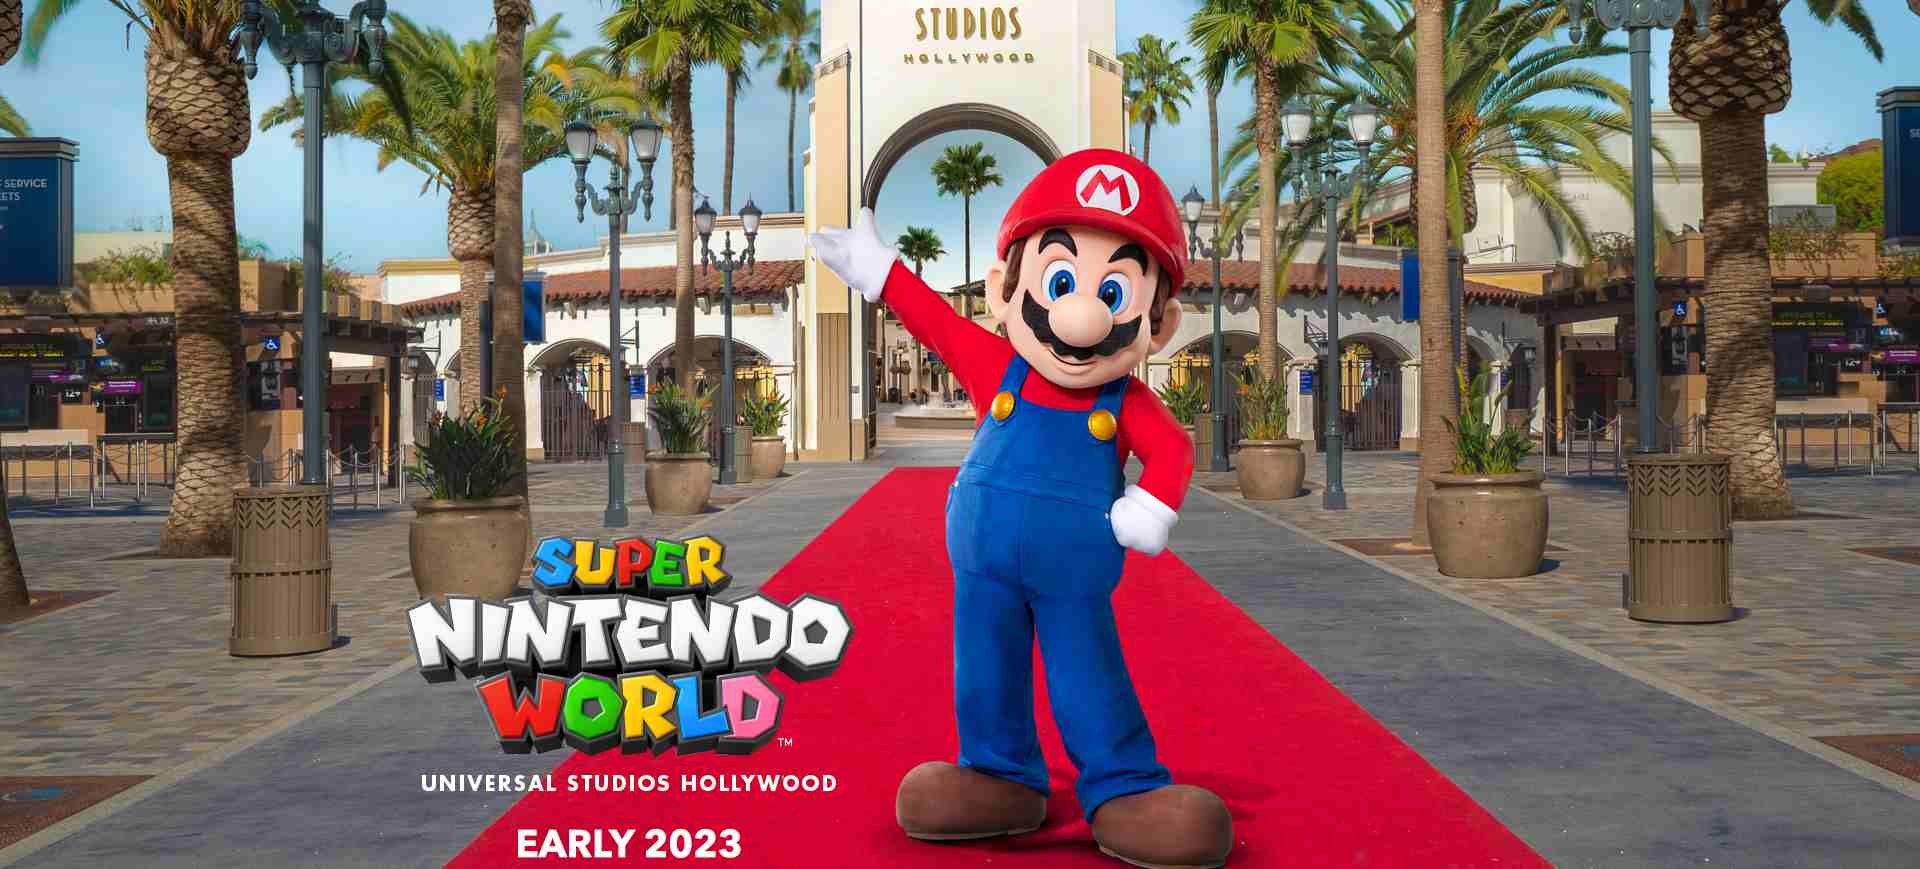 Imagem de divulgação do parque temático da Disney baseado no universo da Nintendo: o Super Nintendo World; na imagem está a entrada do Universal Studios e, à frente, uma imagem do personagem Mario